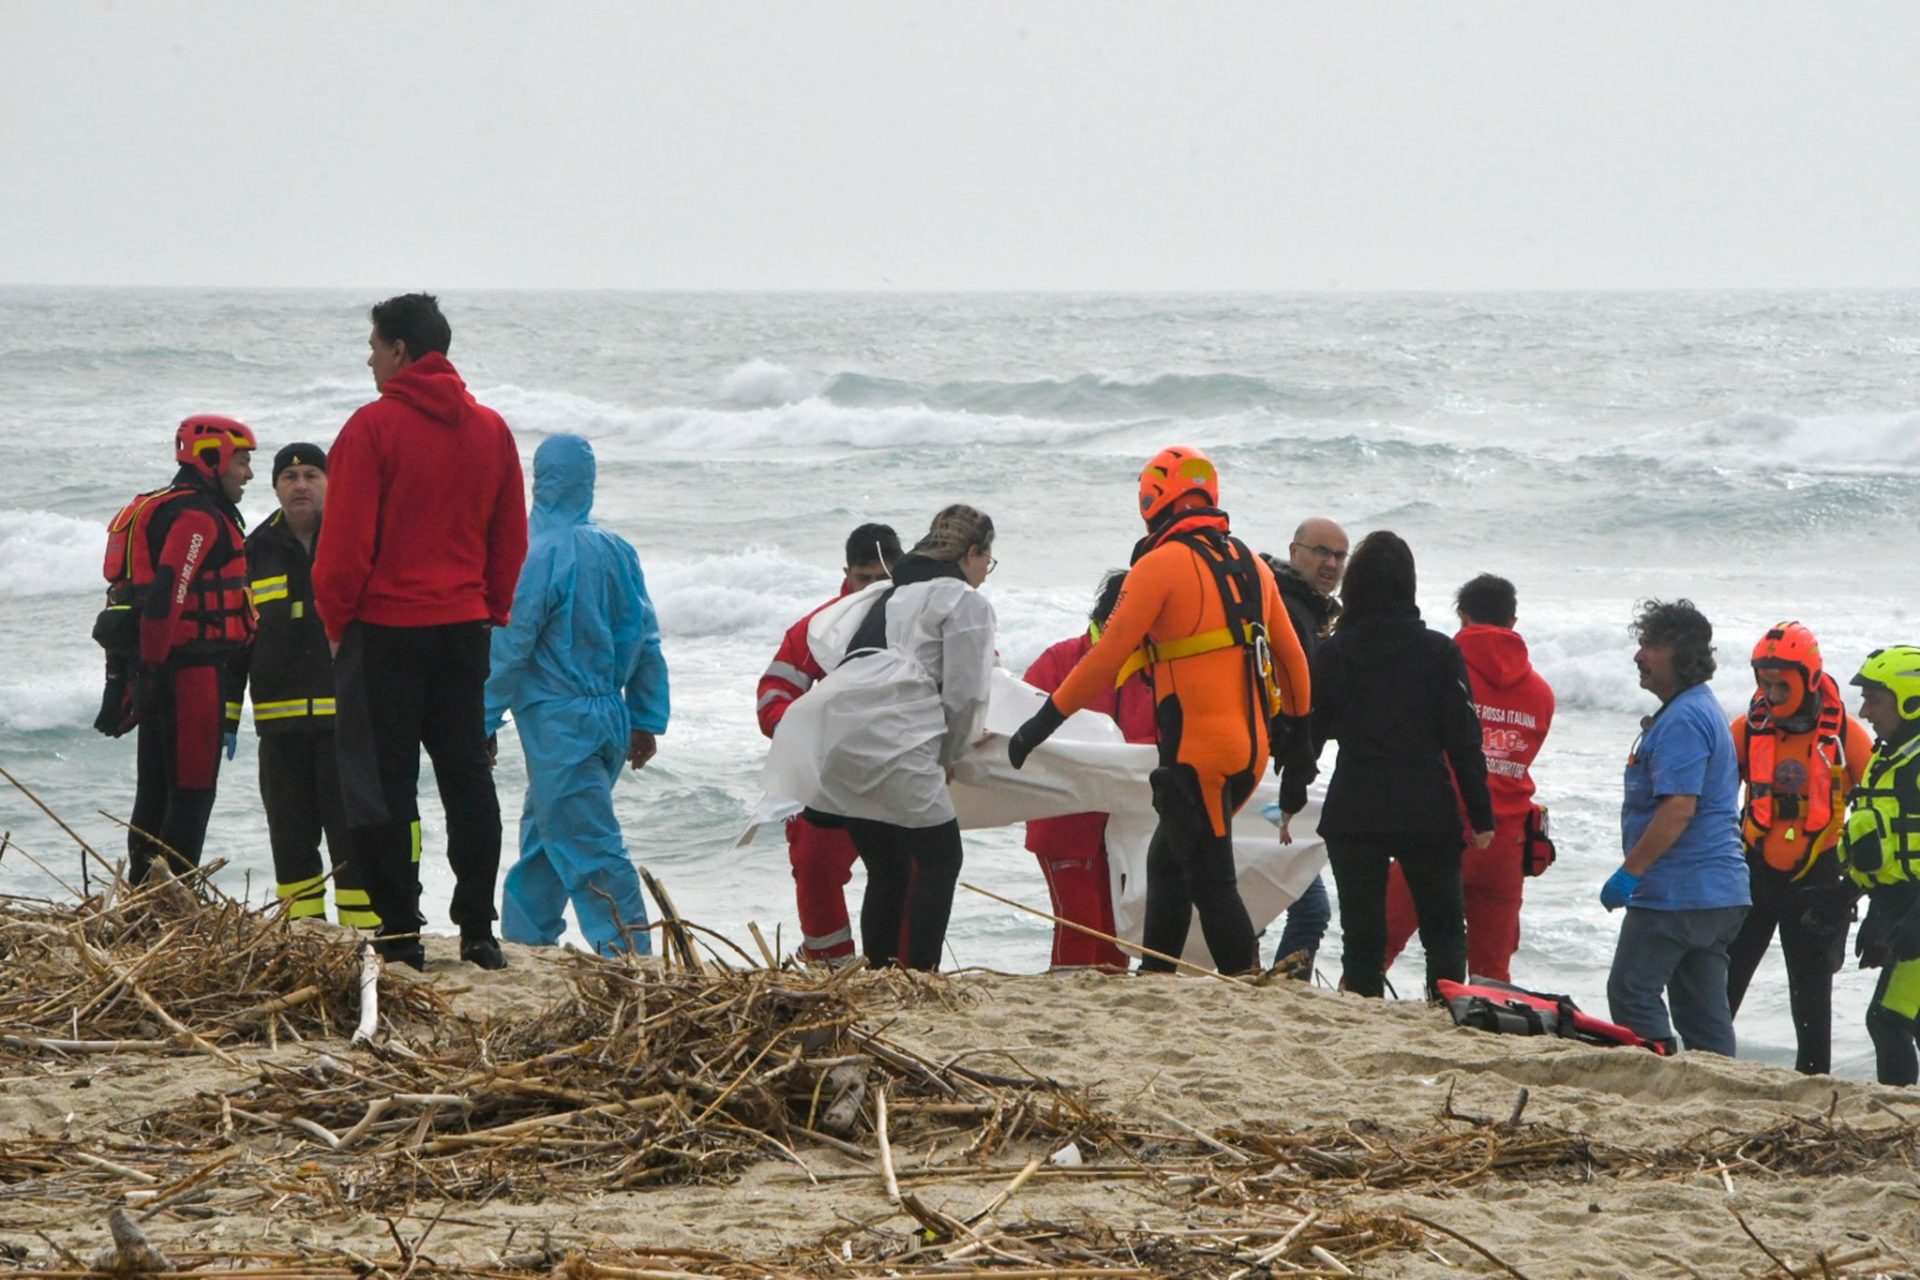 Europe in brief: Von der Leyen reacts to migrant shipwreck near Italian coast